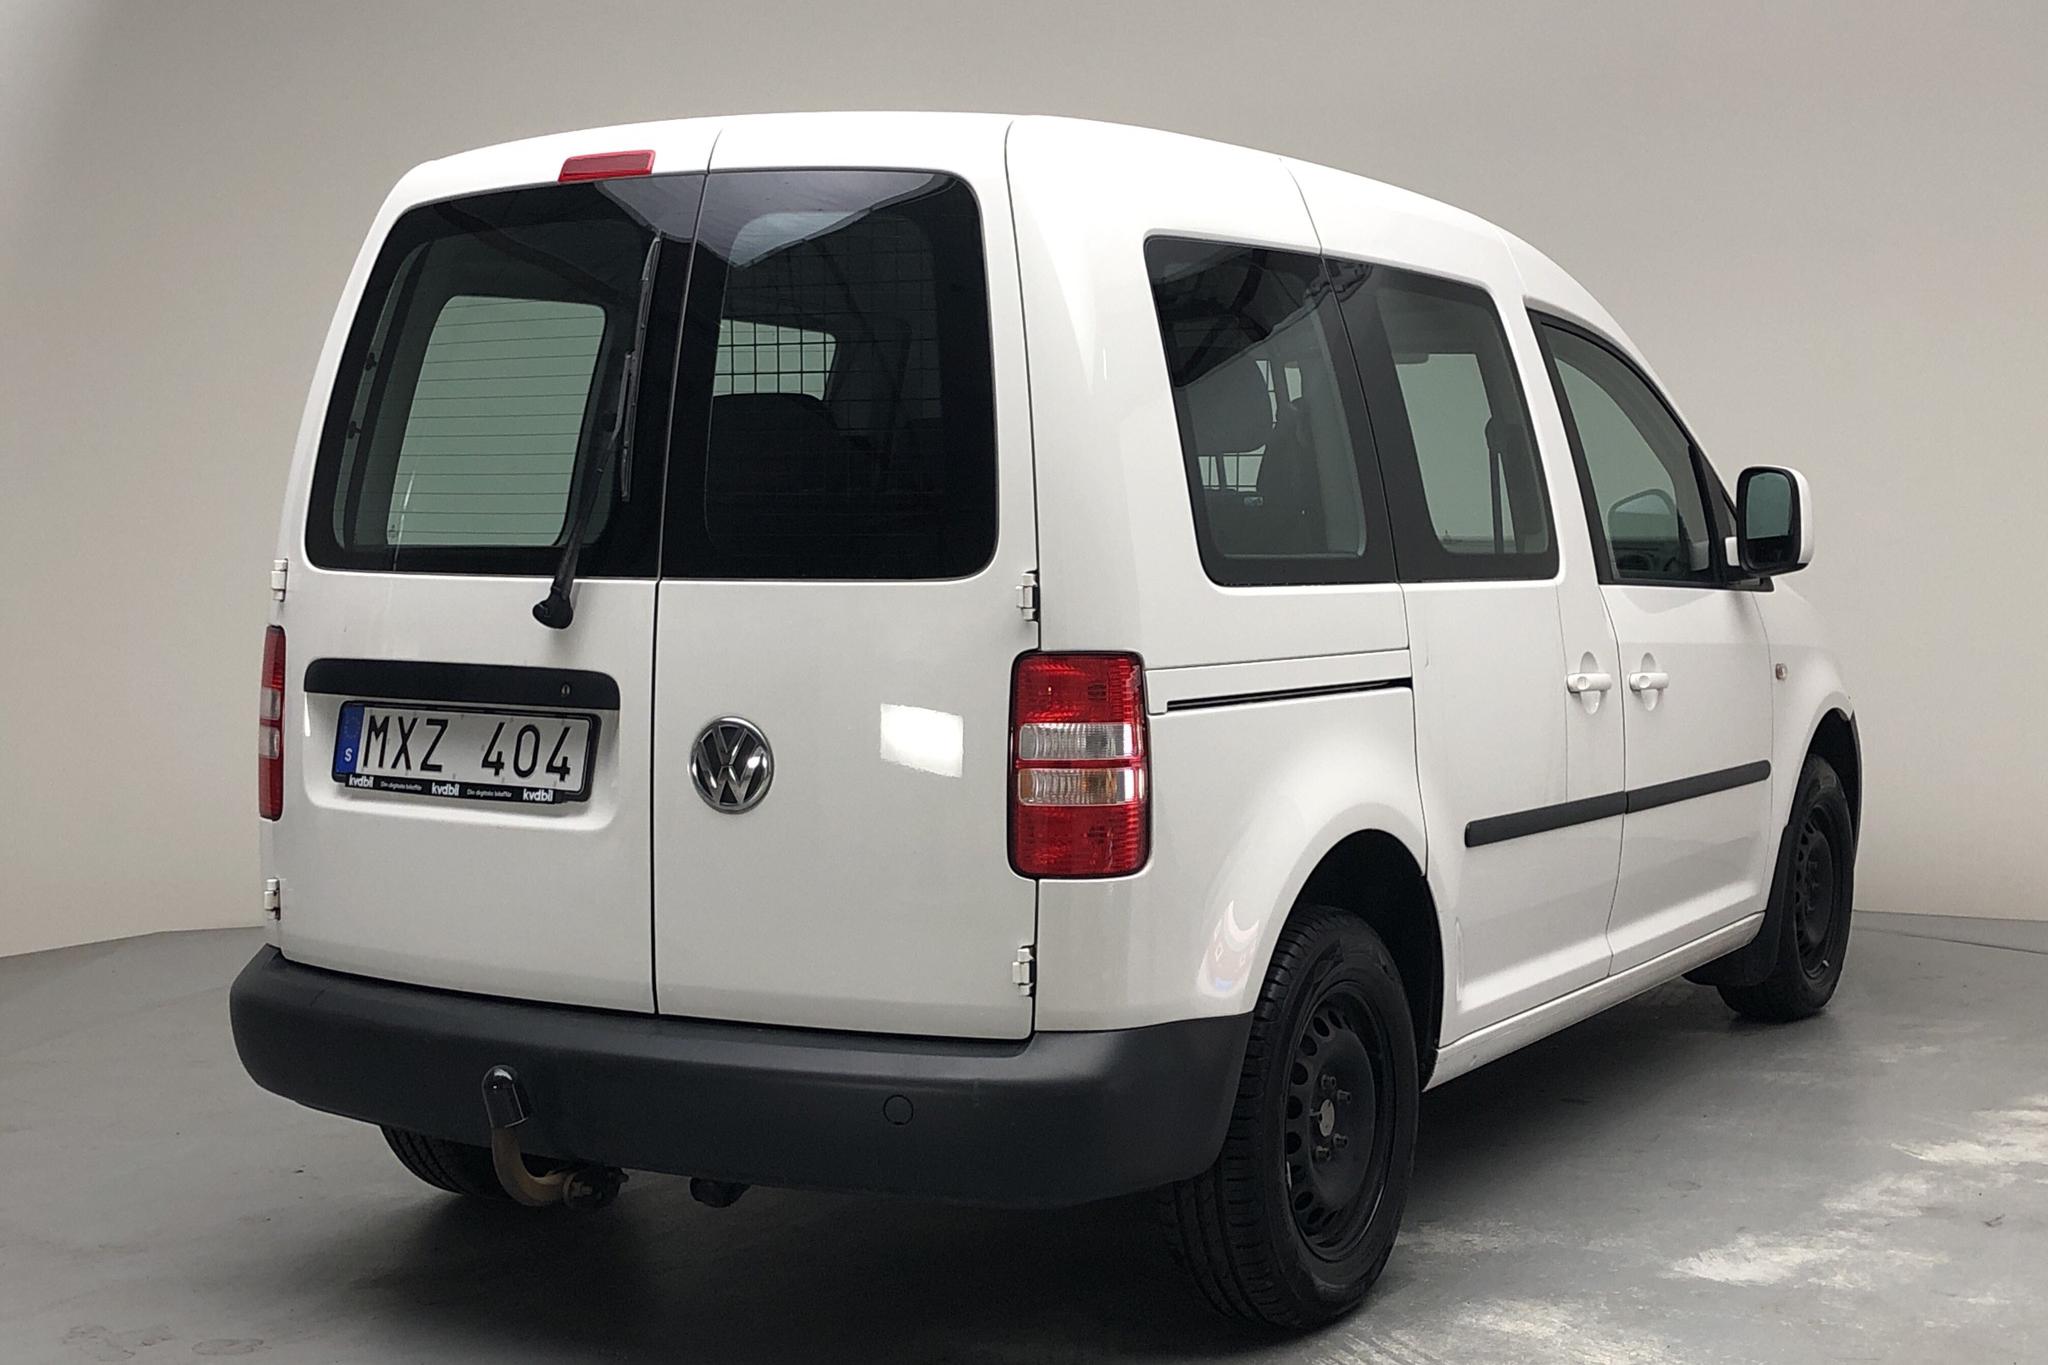 VW Caddy MPV 1.6 TDI (102hk) - 176 900 km - Manual - white - 2013